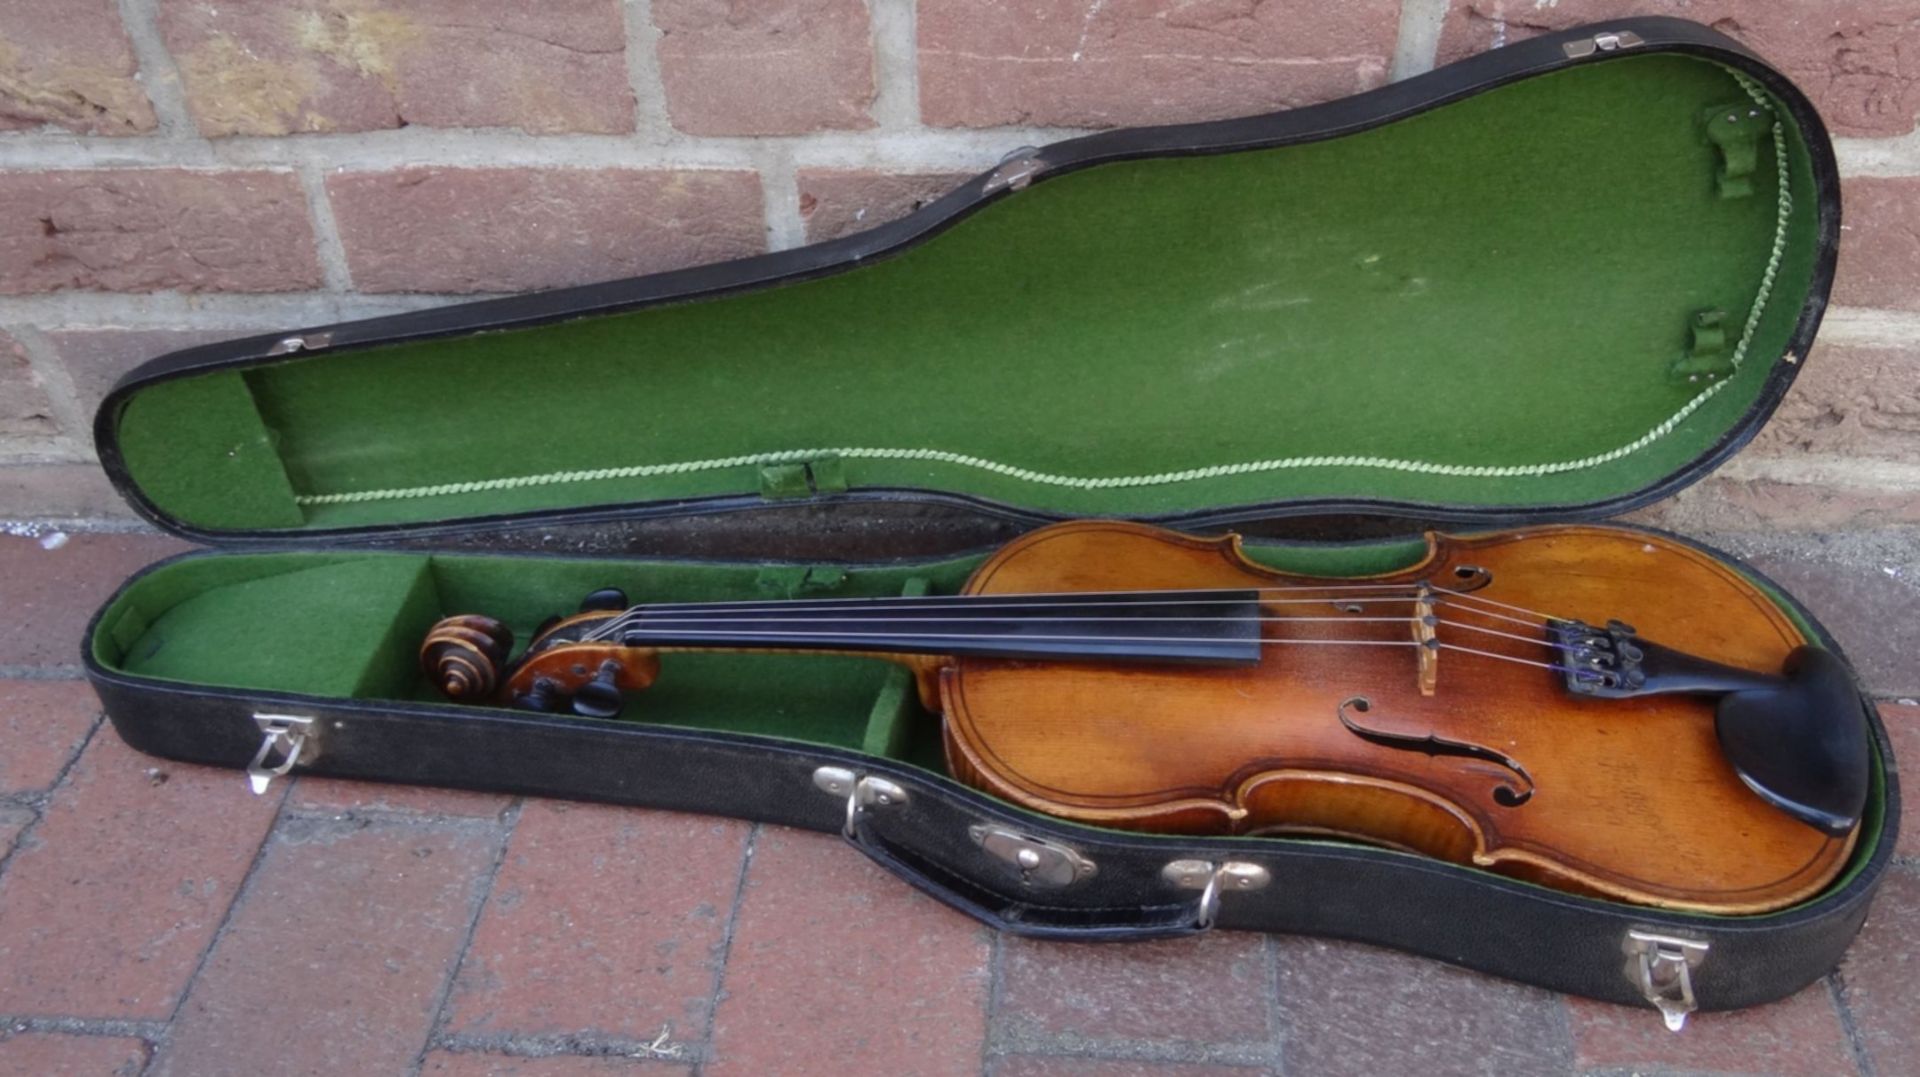 alte Geige im Koffer, innen Etikett "Ciovan Paolo Meggine", 19/20 Jhd?, L-62 cm, gut erhalten